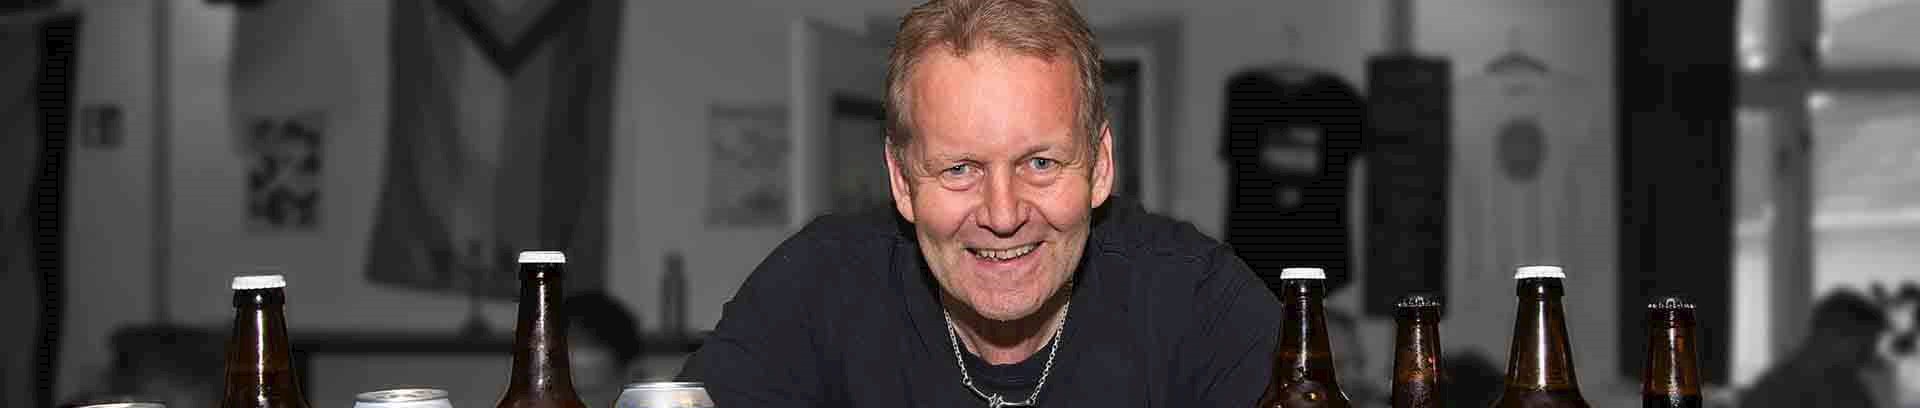 Torben Mathews, ølentusiast og foredragsholder ved FOF Aarhus.